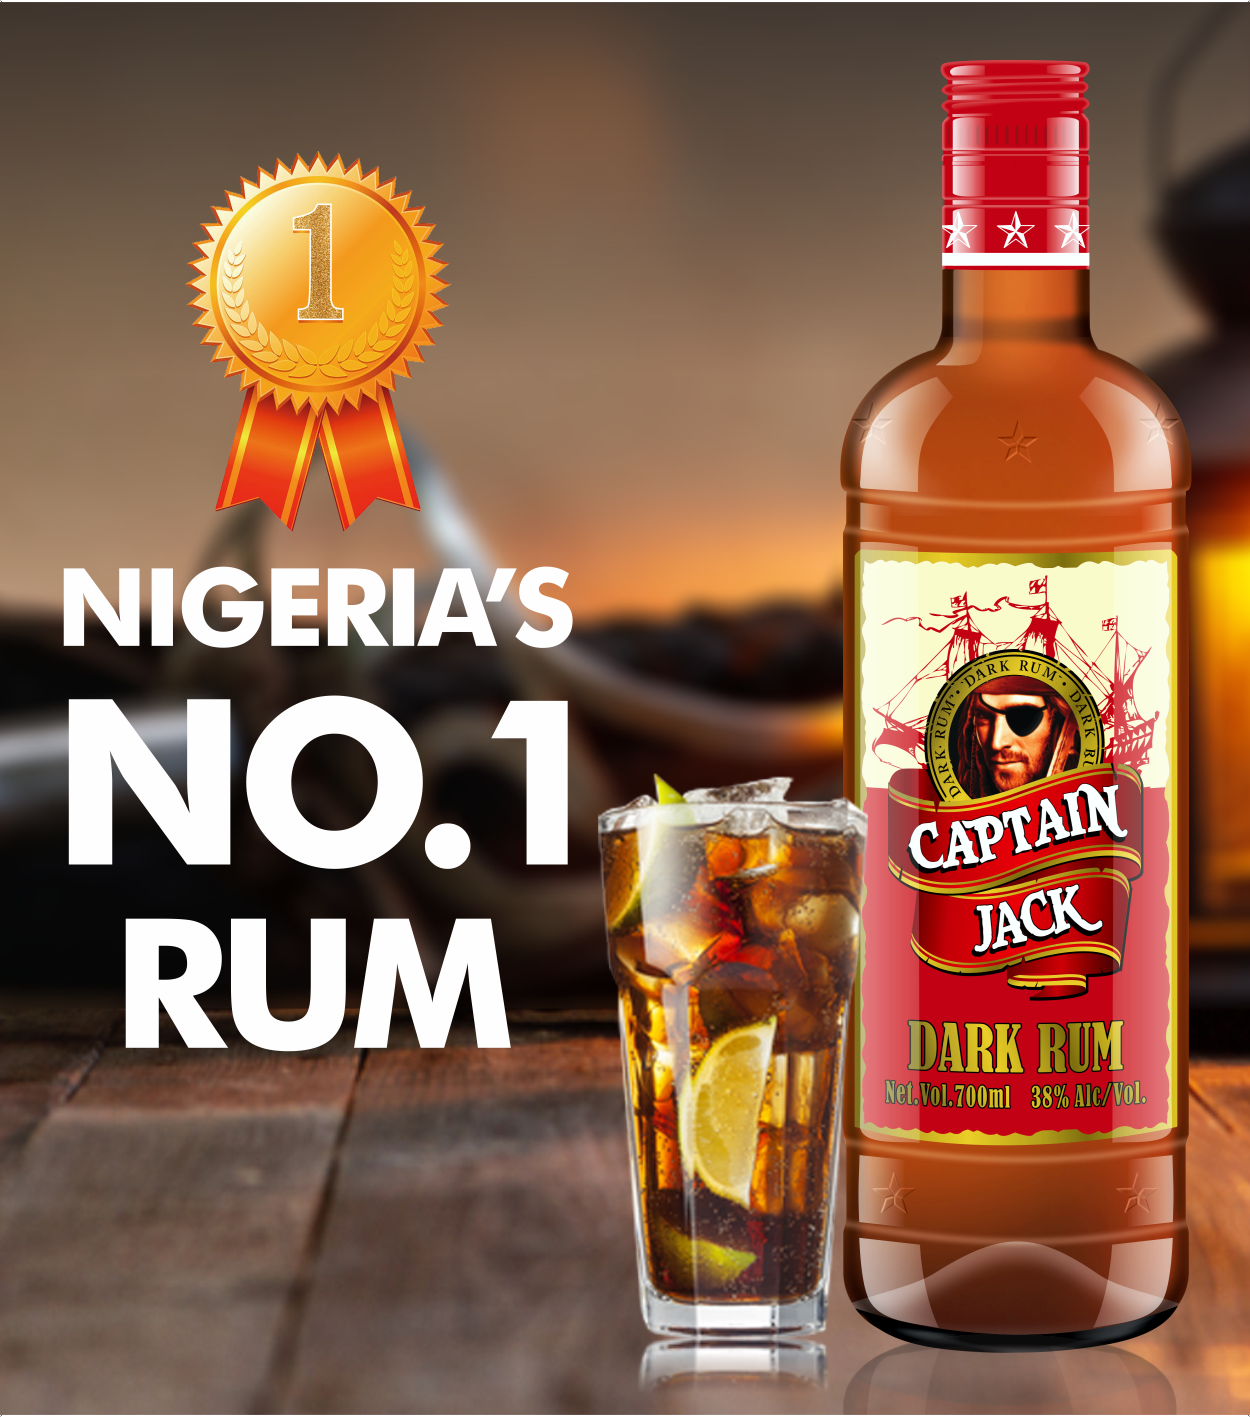 Captain Jack Dark Rum (3)